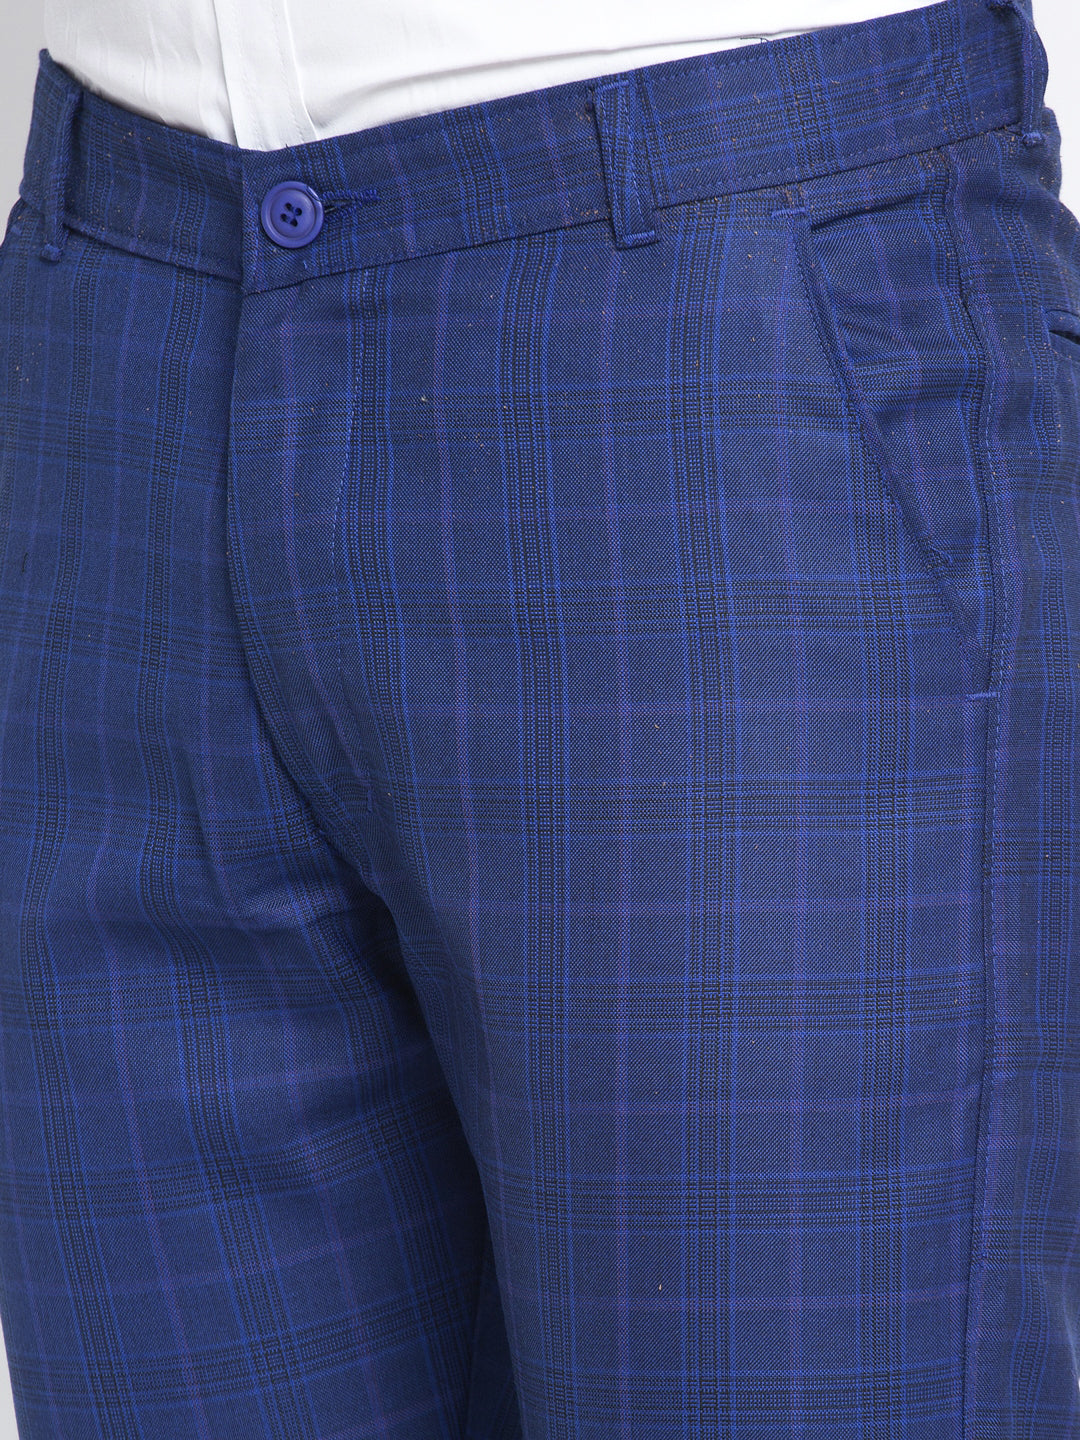 Jainish Men's Blue Formal Trousers